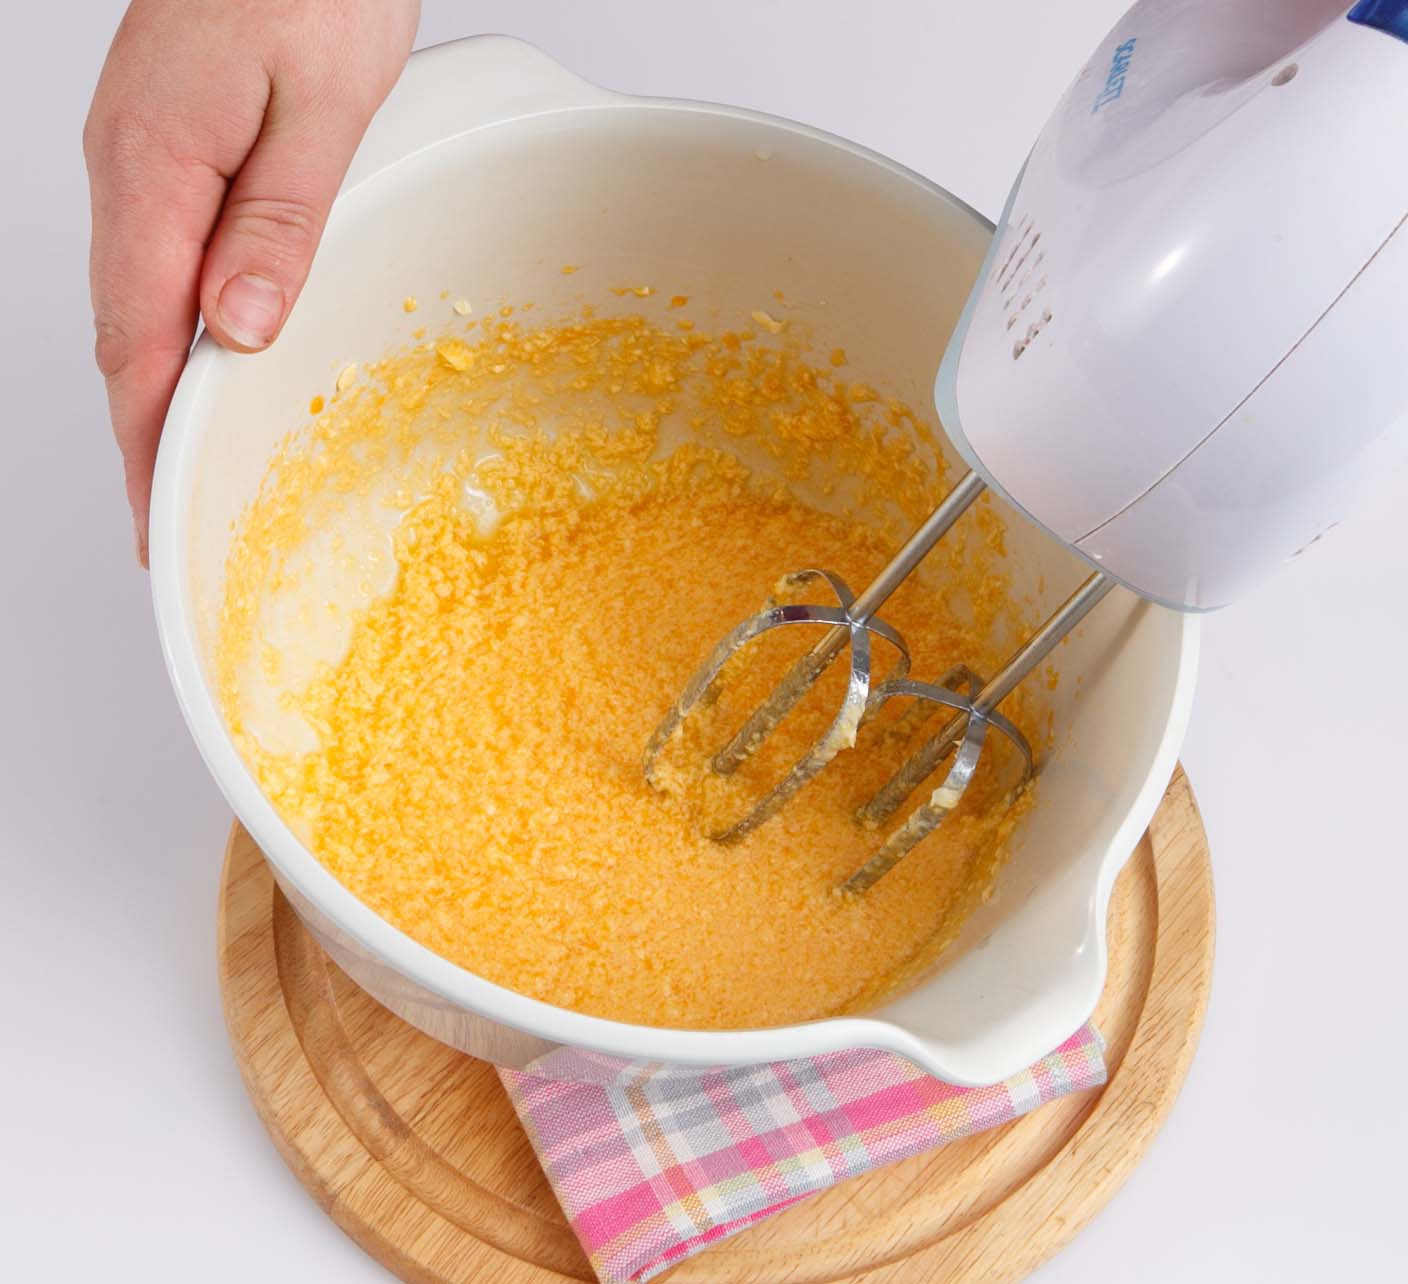 Муку просеять вместе с разрыхлителем, имбирем и корицей. Соединить с желтками и молочной смесью. Вымесить тесто, сформовать из него шар, завернуть в пленку и убрать в холодильник на 2 ч.